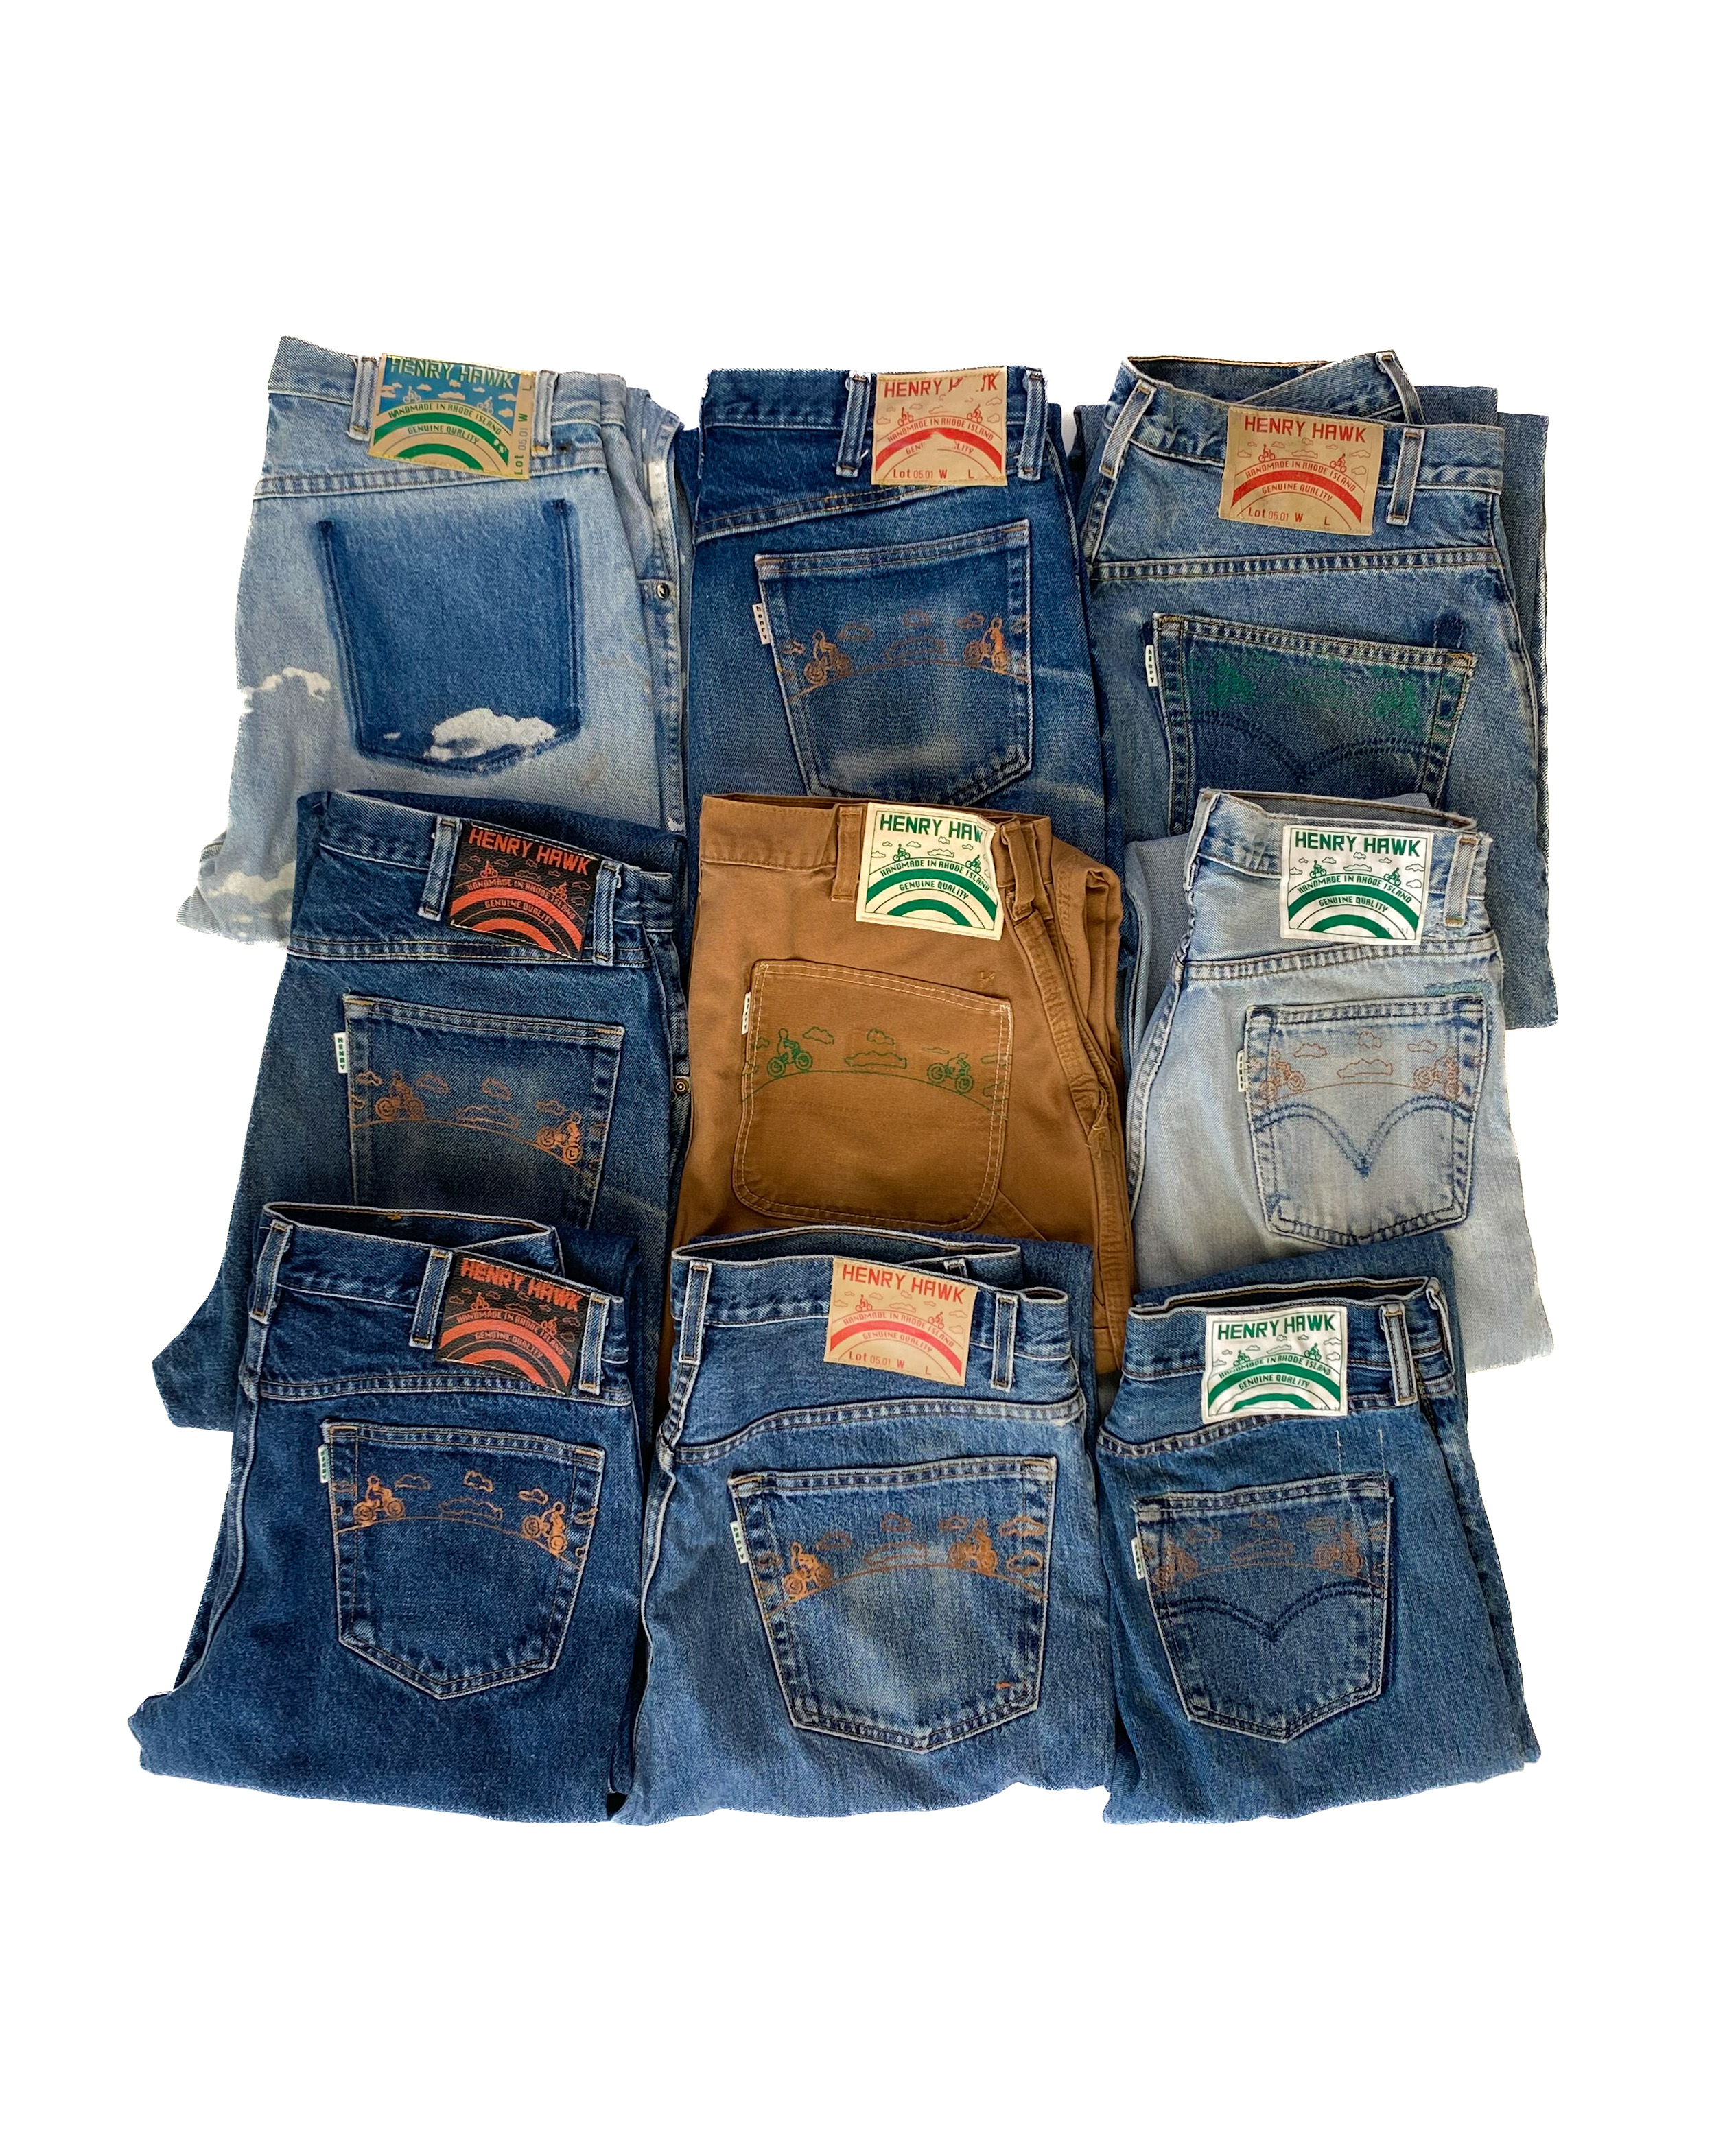 Refurbished jeans SHOP - Hawk Henry